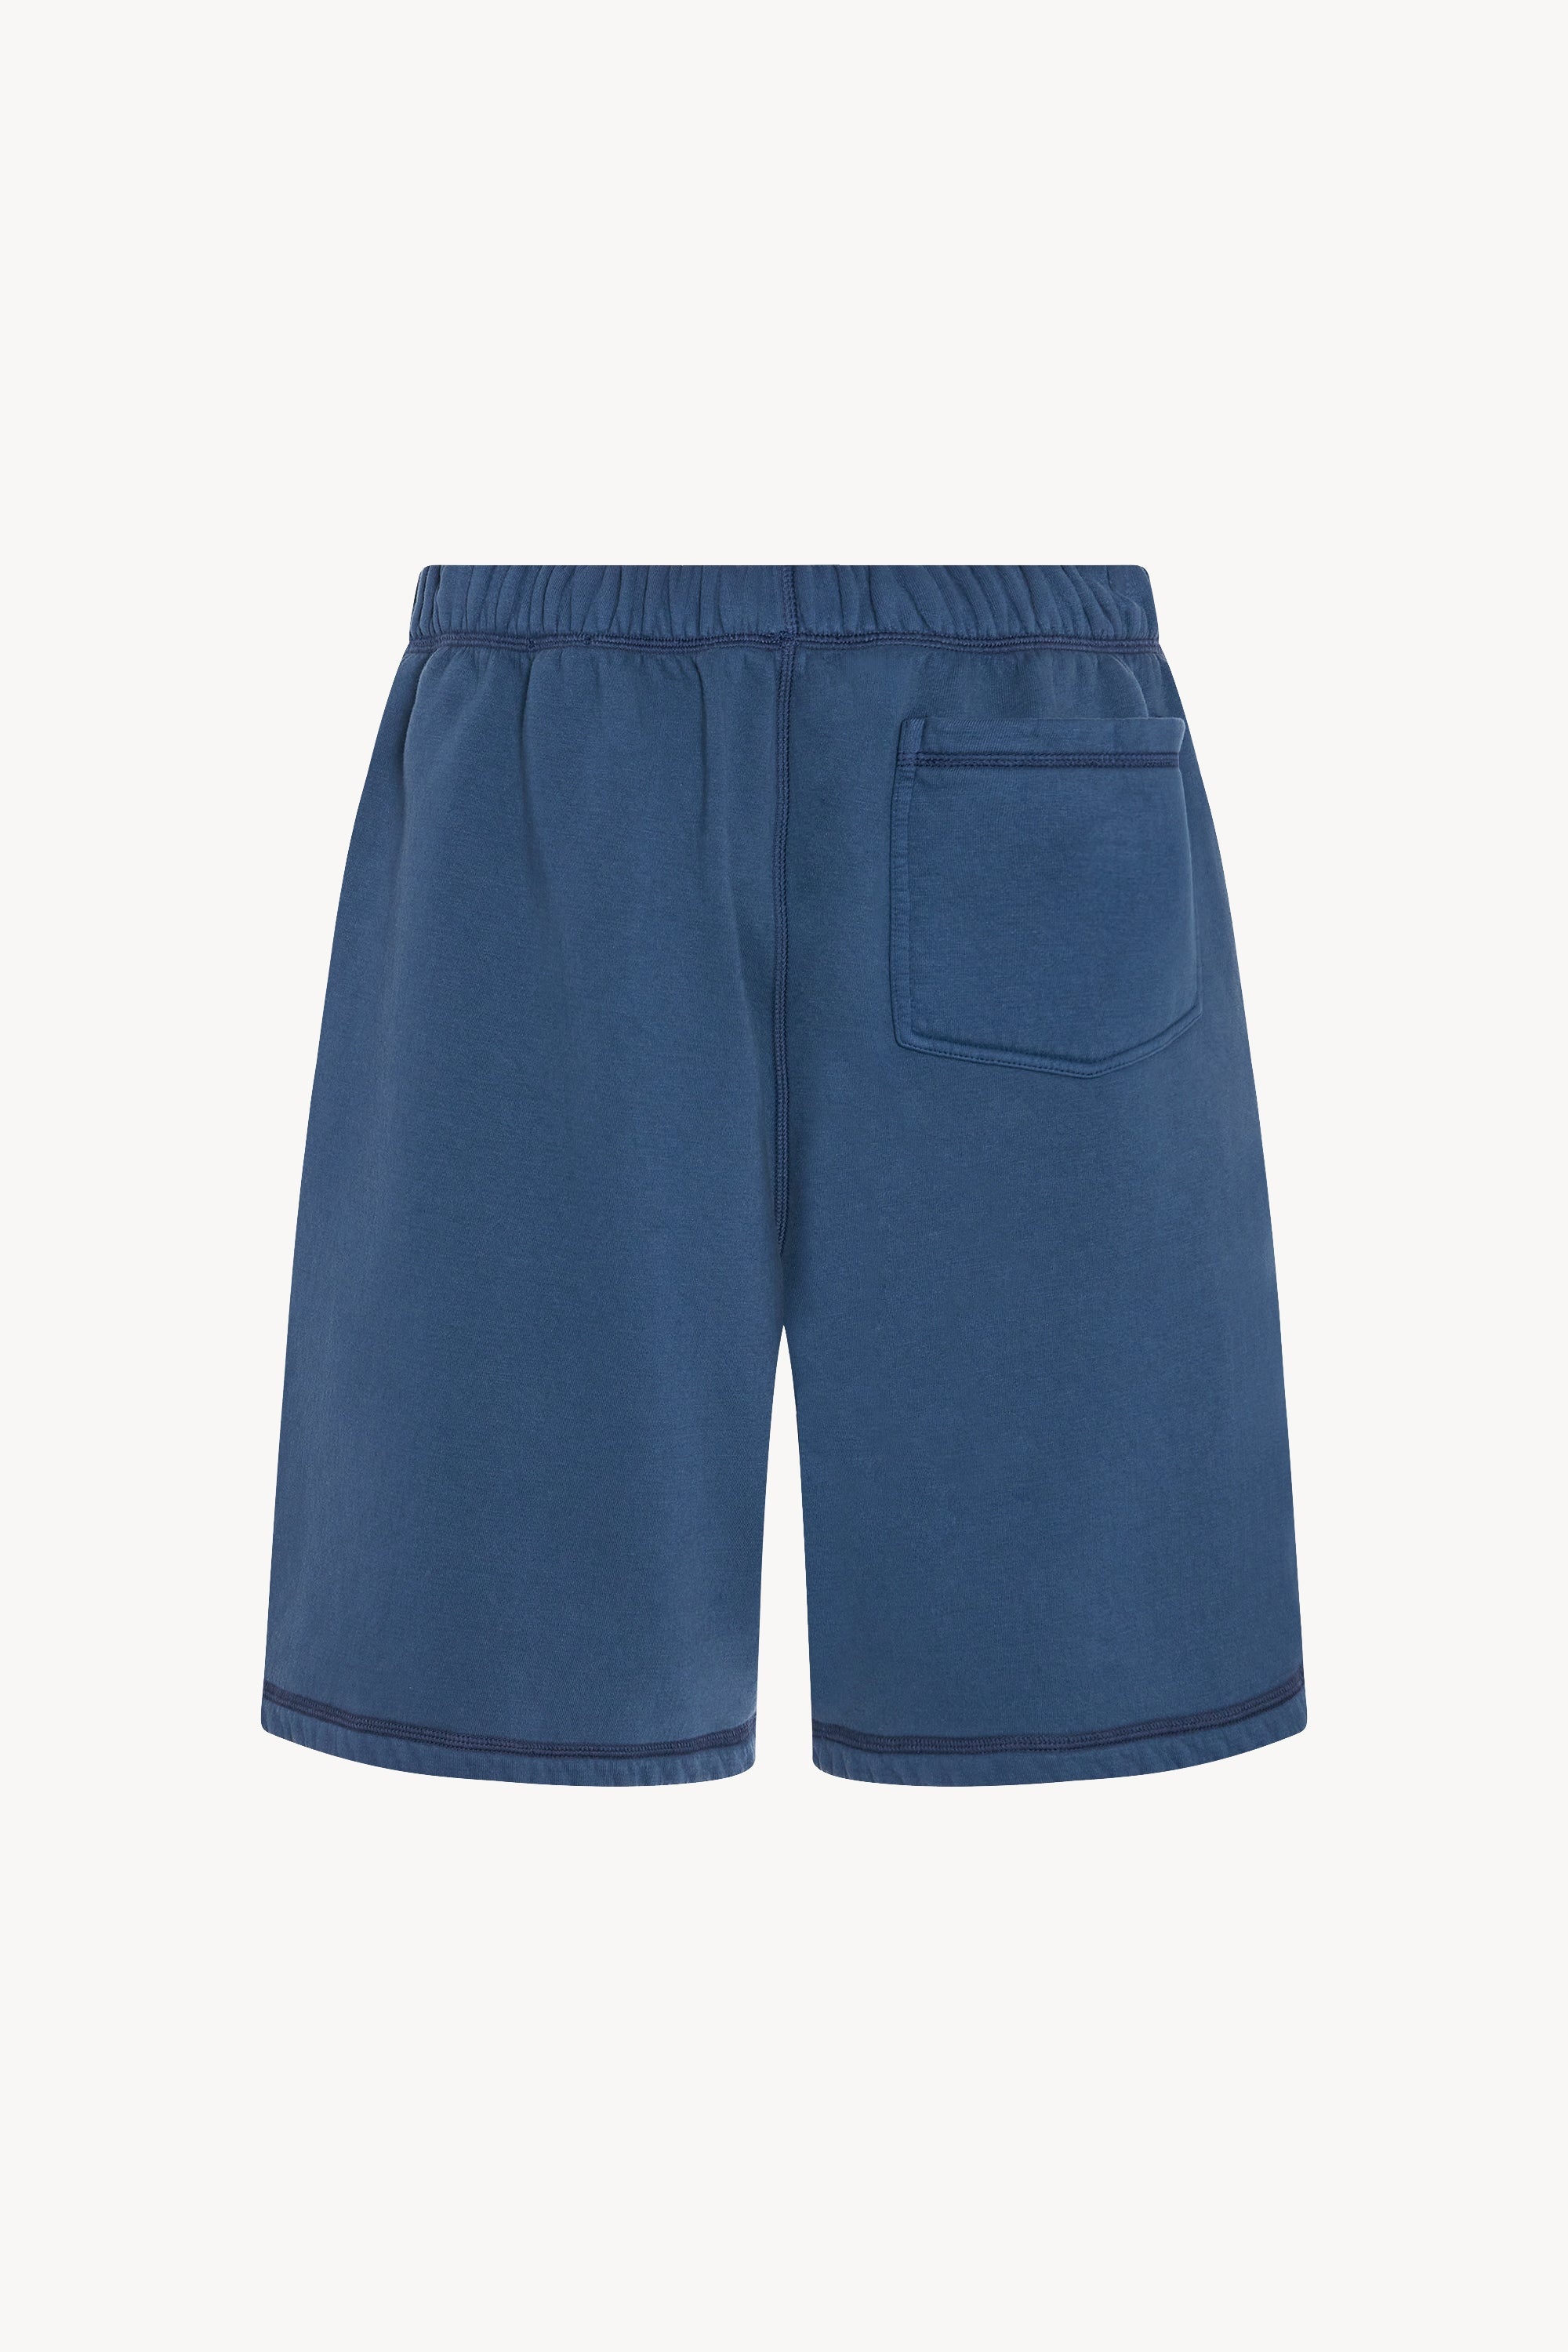 Stanton Shorts in Cotton - 2